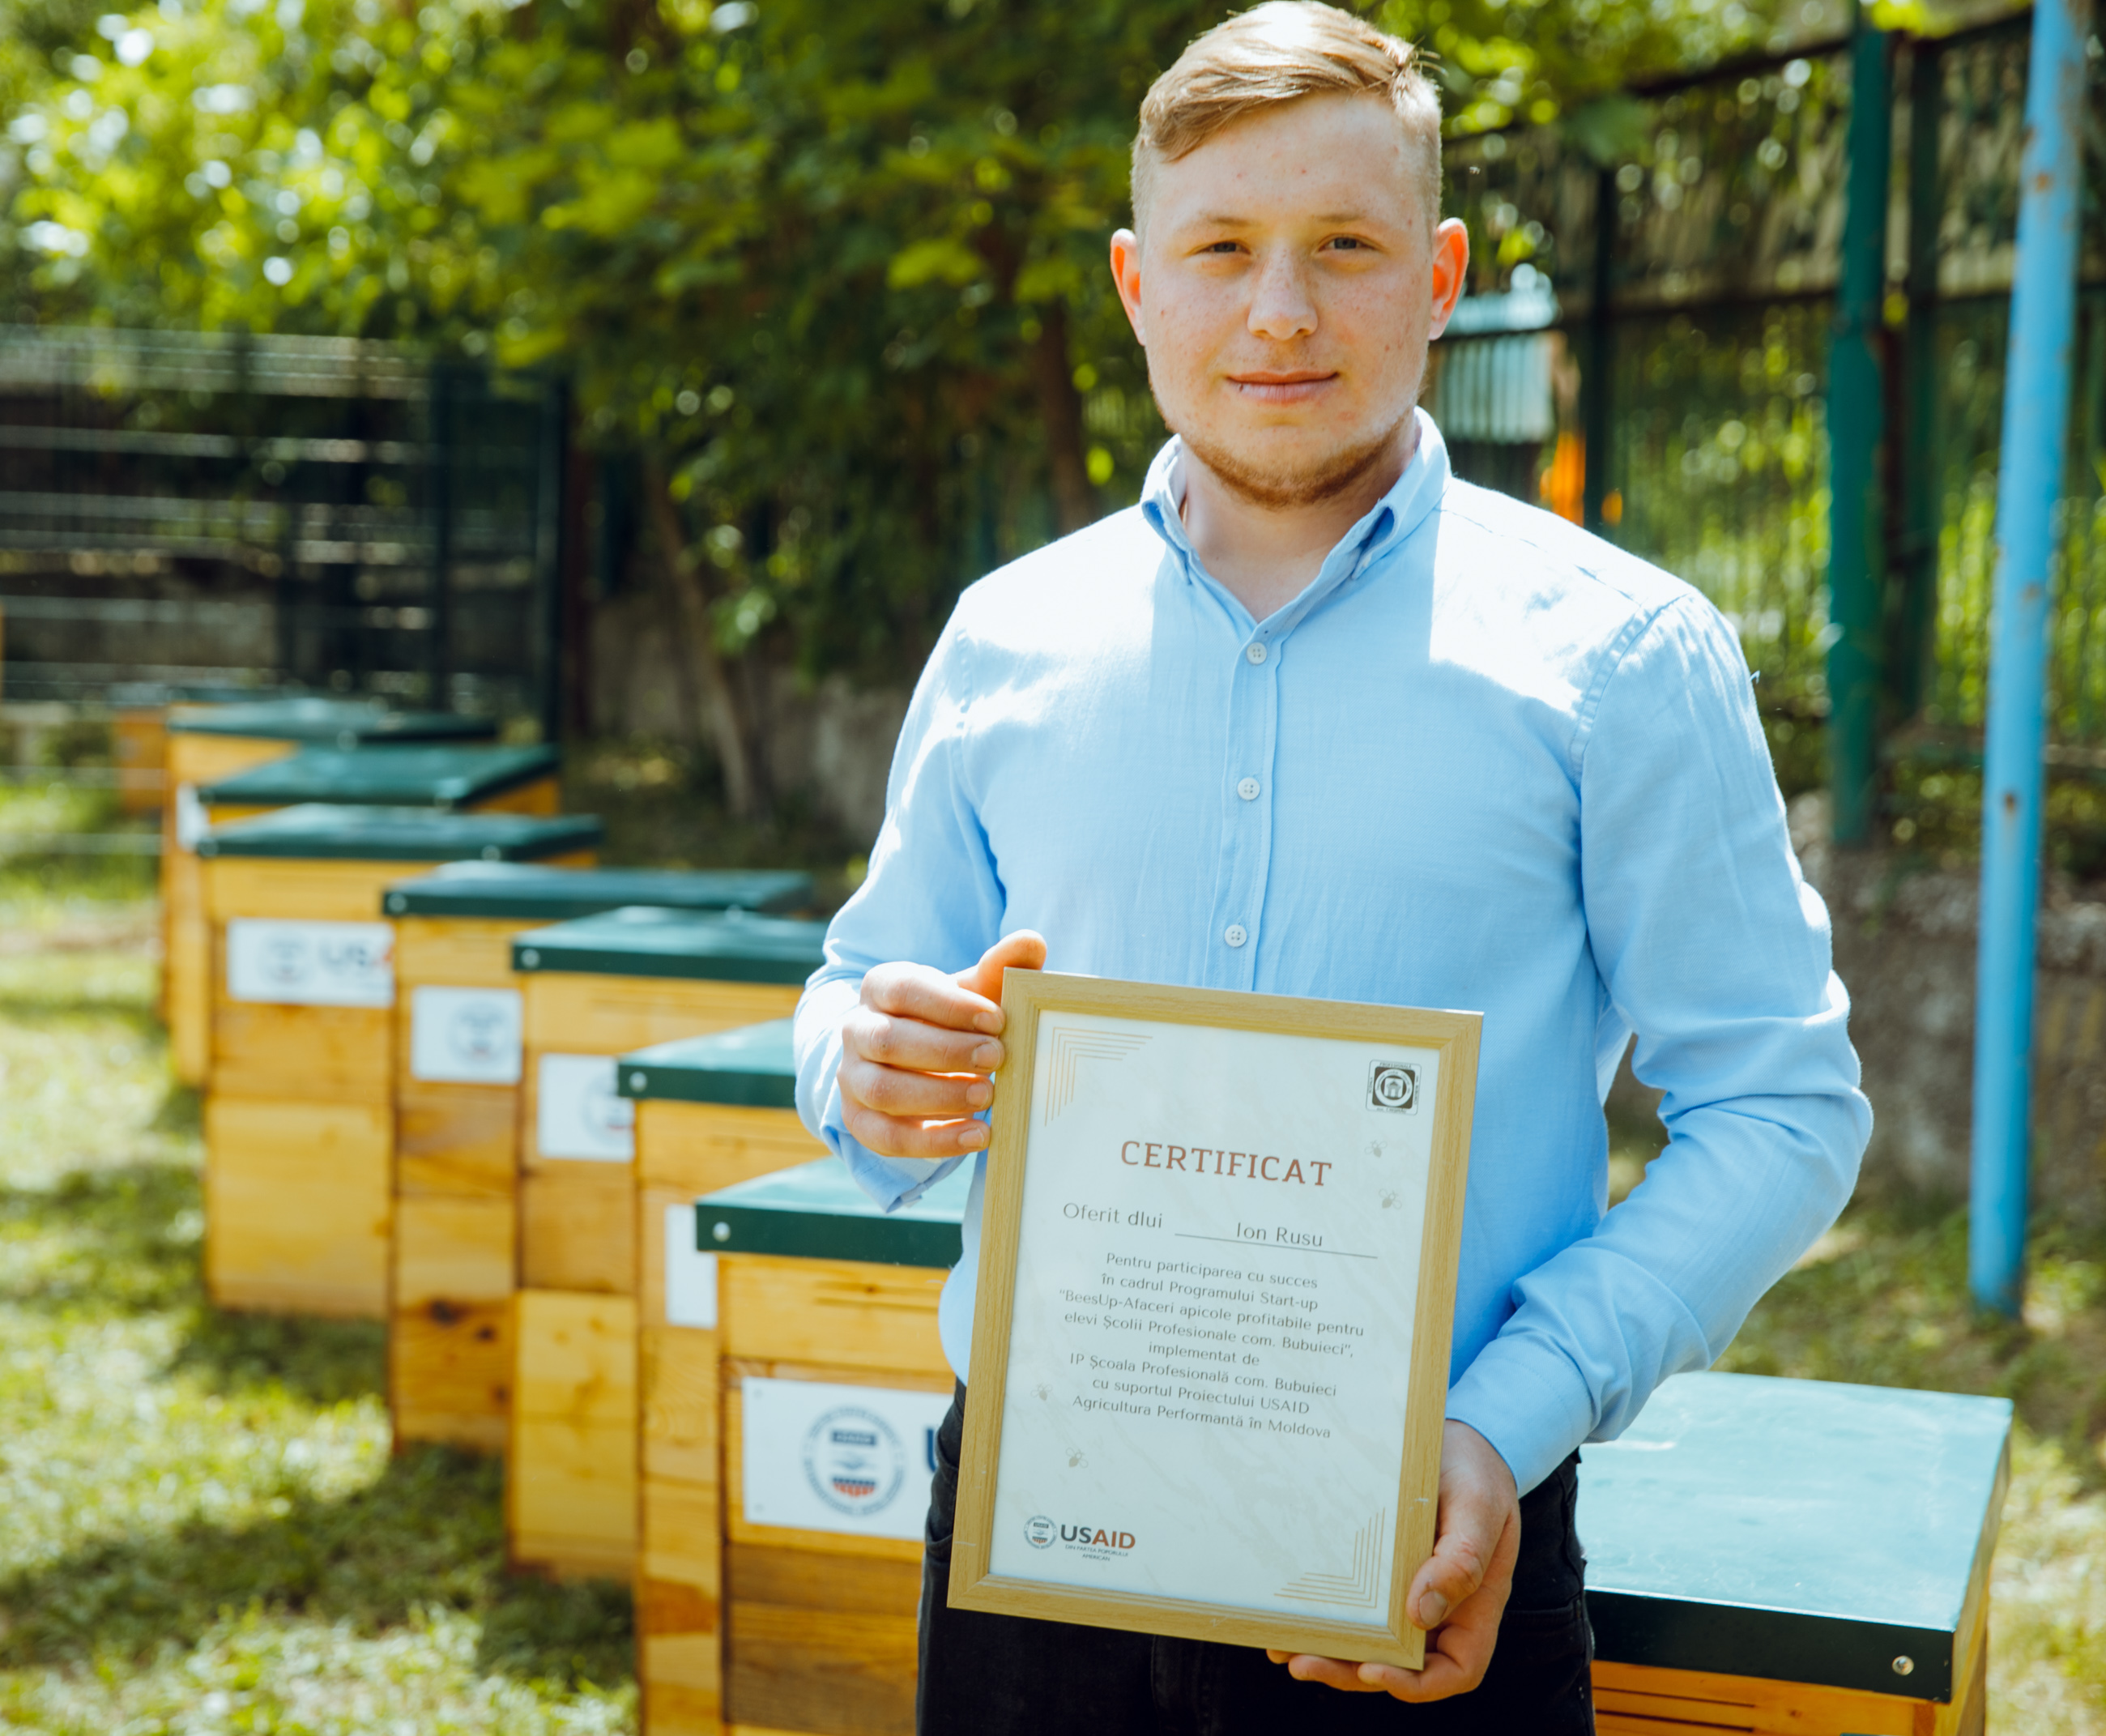 ION RUSU: „Peste 5 ani, vreau să ajung la un număr de 100 de familii de albine”. Aflați povestea apicultor